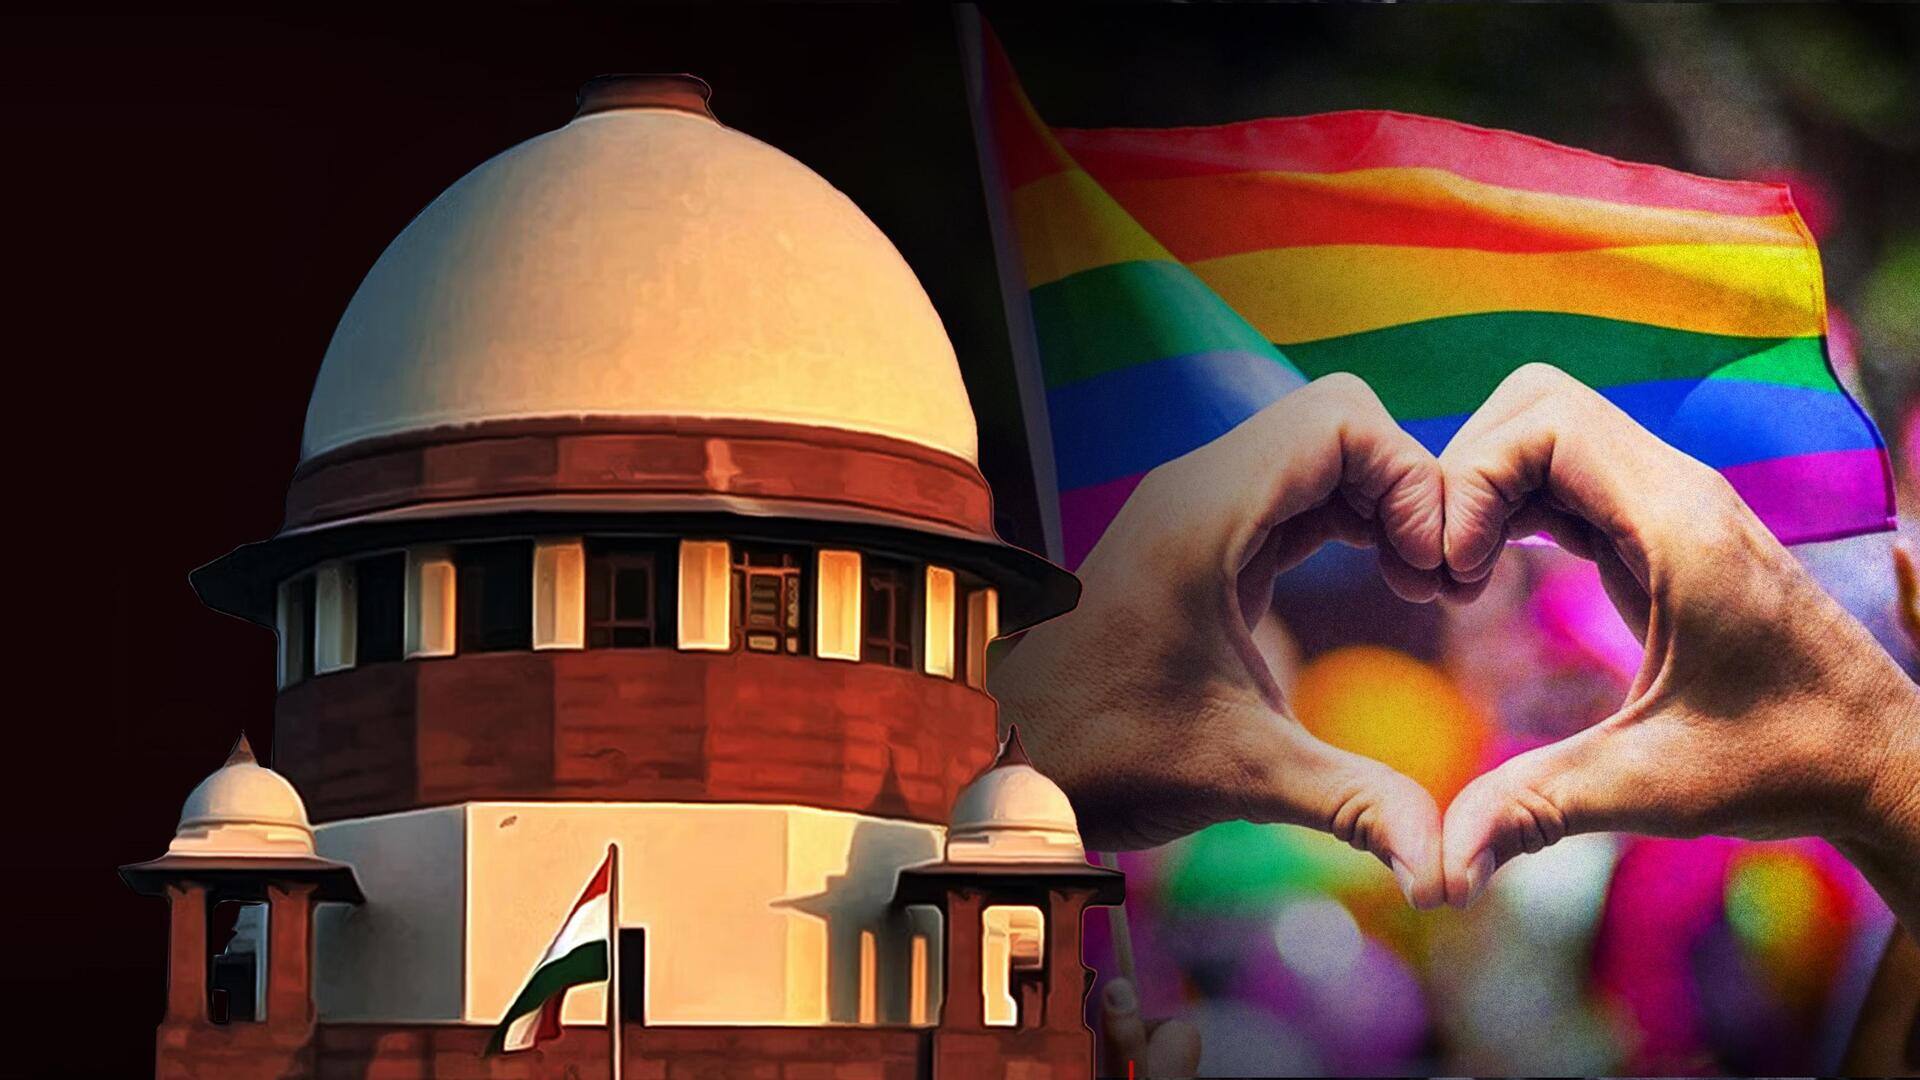 सुप्रीम कोर्ट ने समलैंगिक विवाह को मंजूरी देने से इनकार किया